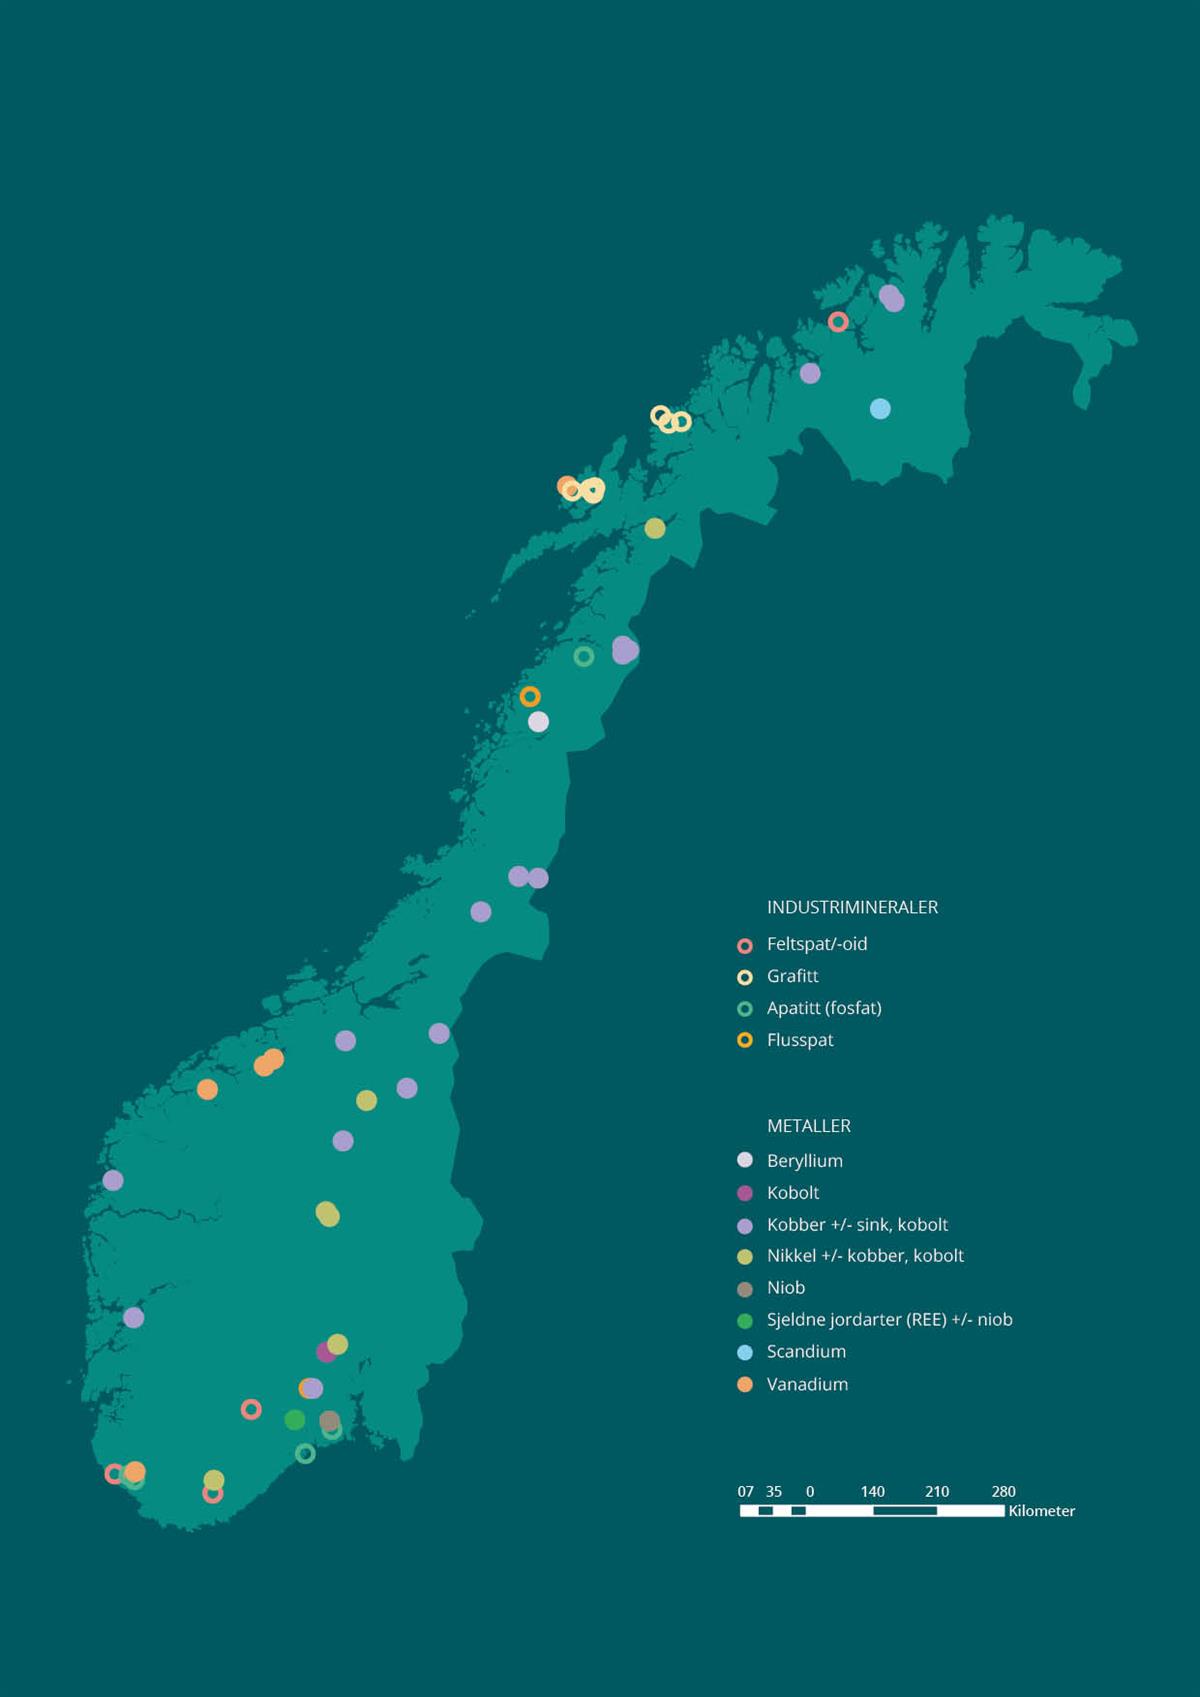 Figur 3.4. viser hvor i Norge det finnes viktige forekomster av kritiske metaller og industrimineraler.